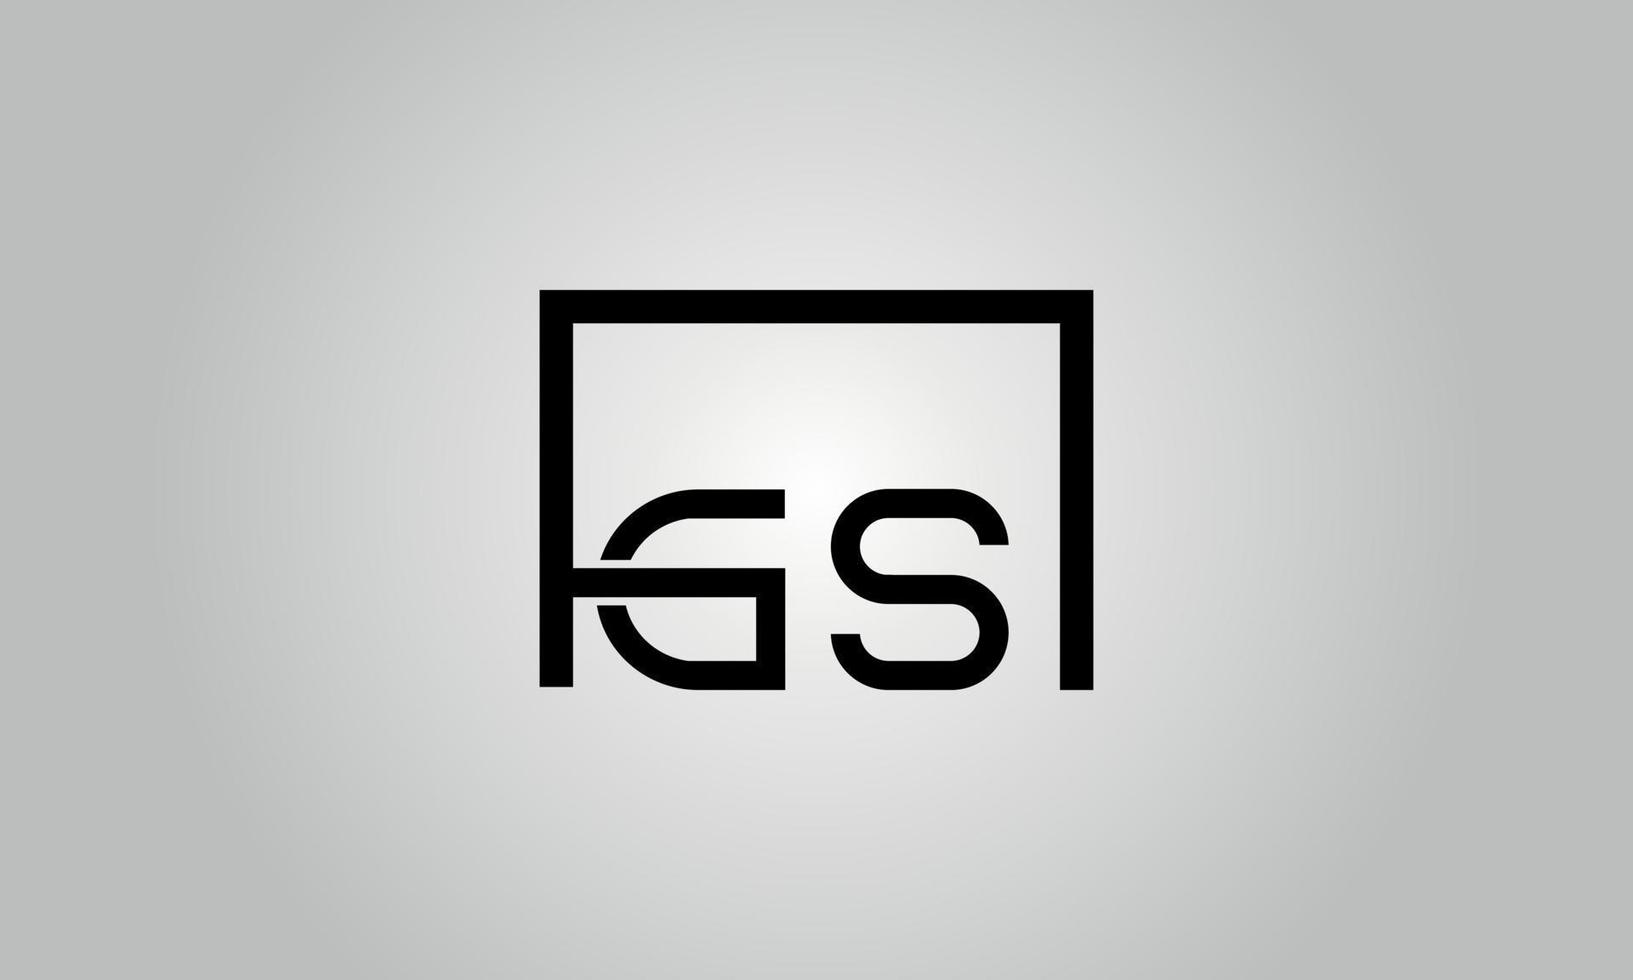 création de logo lettre gs. logo gs avec forme carrée dans le modèle de vecteur gratuit de vecteur de couleurs noires.